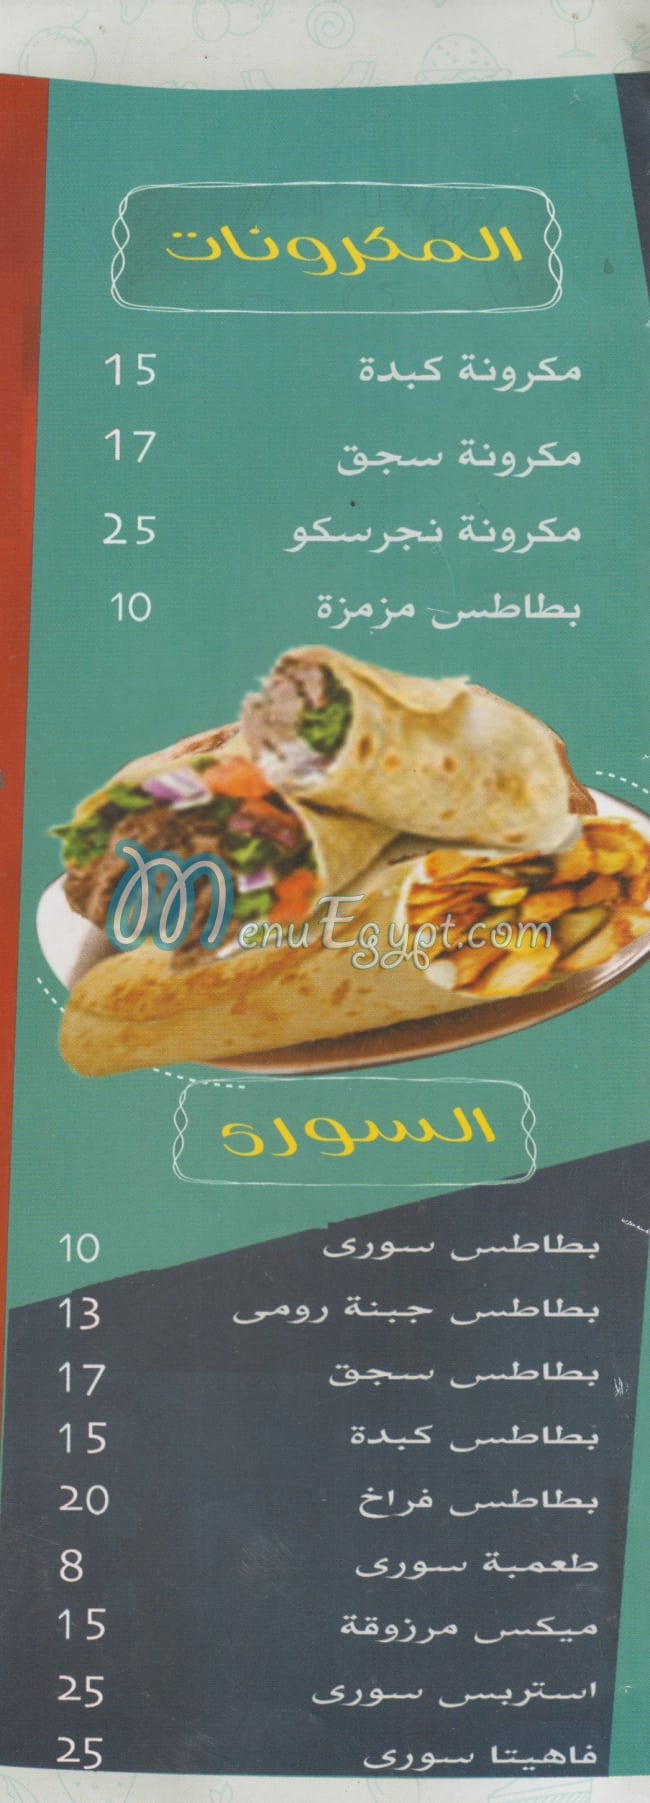 مطعم مطعم مرزوقة مصر